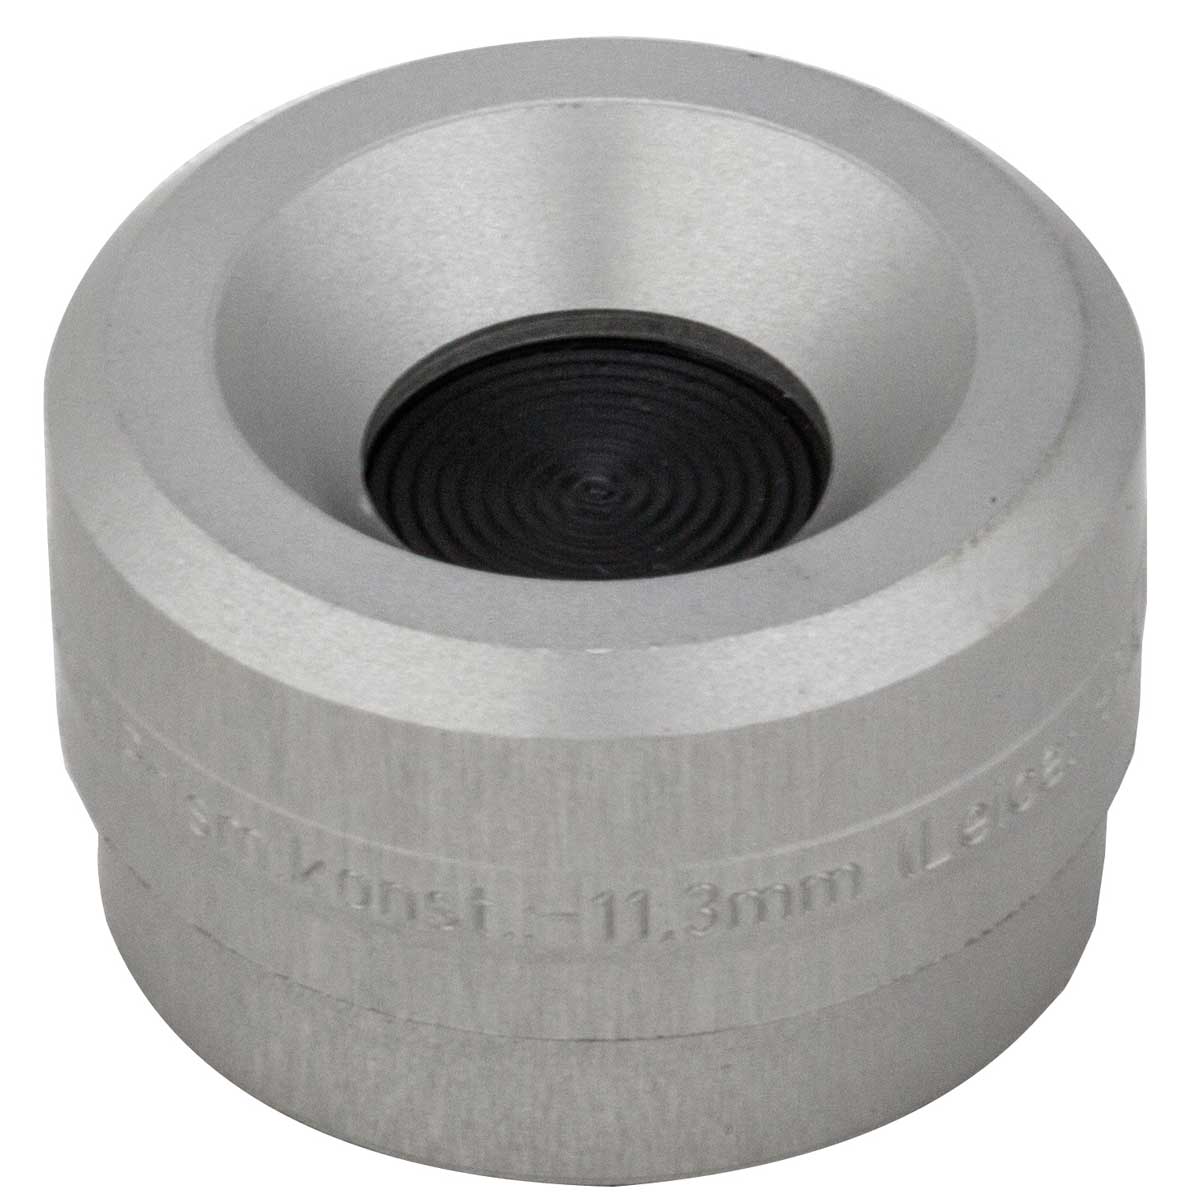 Magnetische Basis für Kugelprismen mit 30 mm Durchmesser